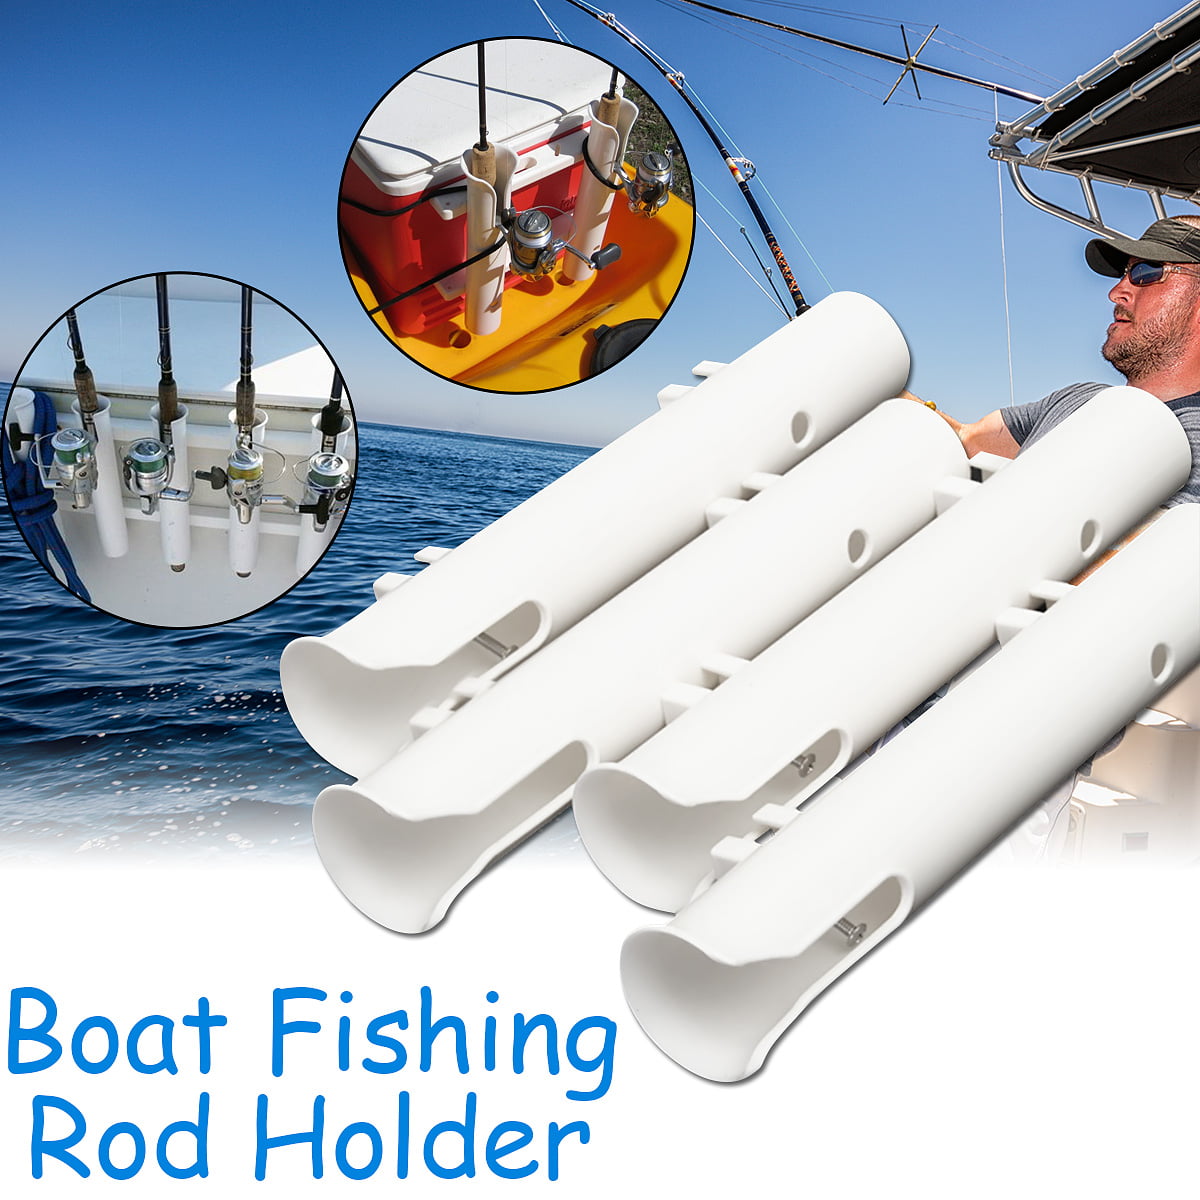 Universal Fishing Rod Mount Holder Rack Plastic Bracket for Kayak Canoe Boat Yacht 1 Set of Fishing Rod Holder